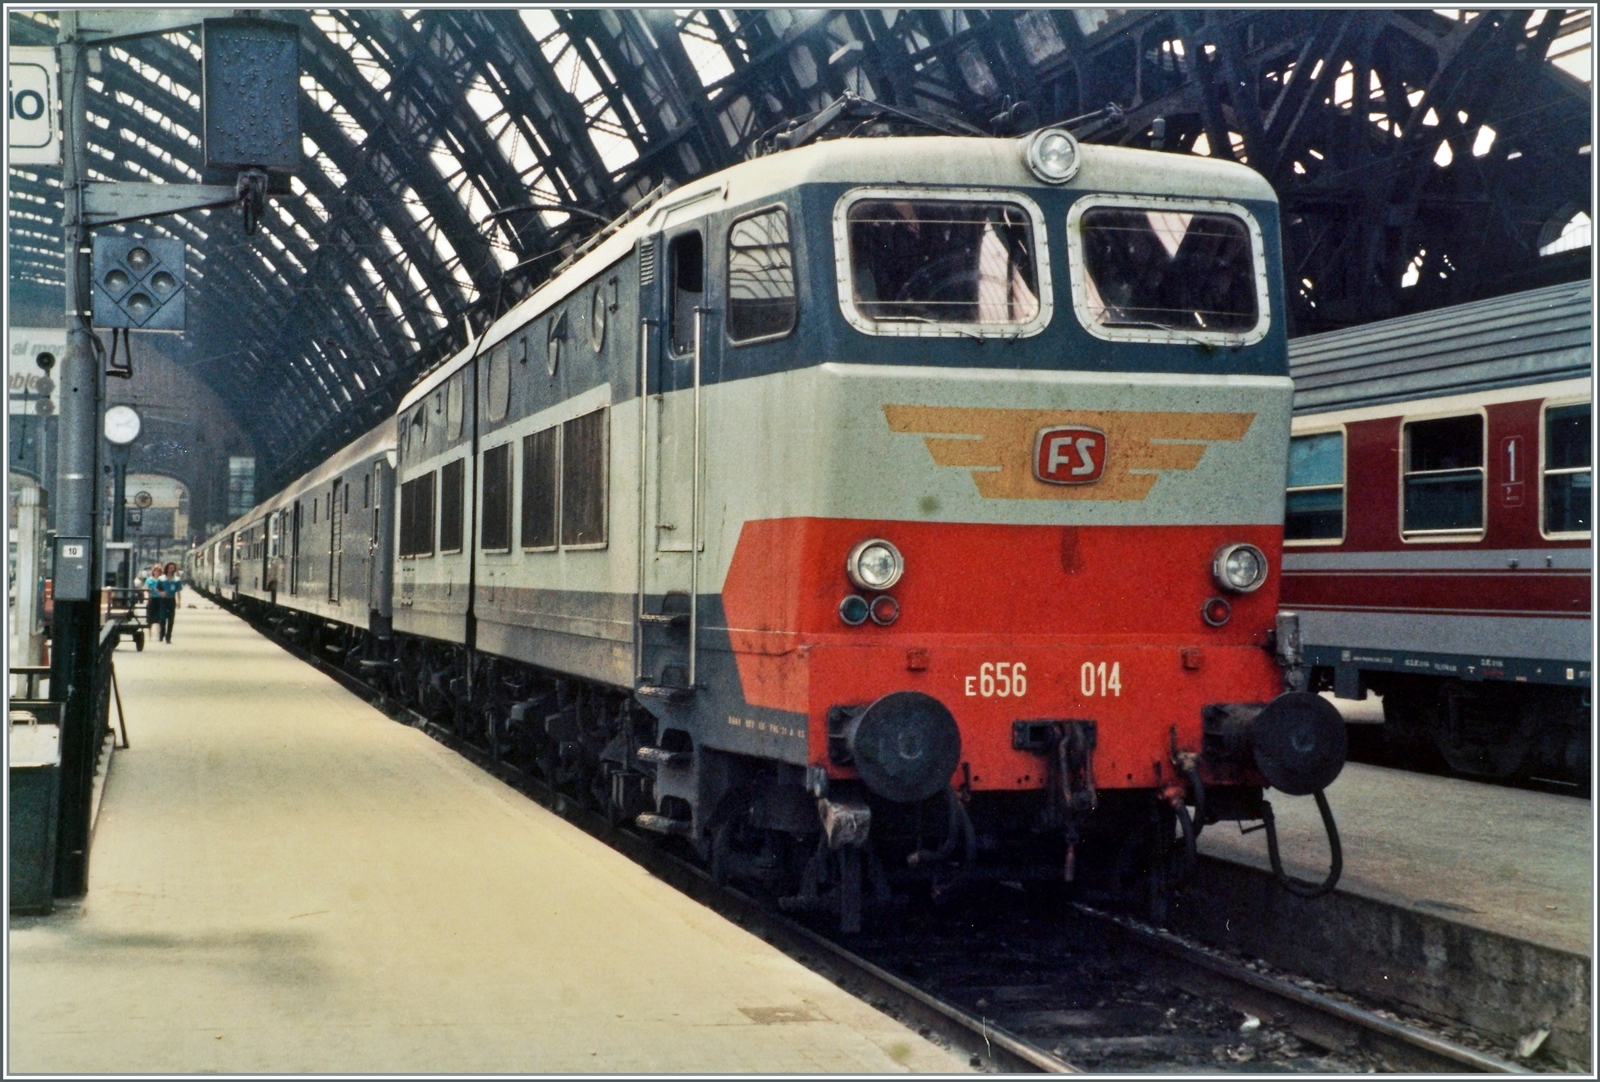 Die FS E 656 014  Caimano  ( Kaiman  Alligator/Krokodil) wartet in Milano Centrale mit einen typischen Reisezug aus grauen Wagen auf die Abfahrt, rechts im Bild ist ein FS Wagen in einer neuen Farbvariante zu erkennen.  

Analogbild vom Juni 1985